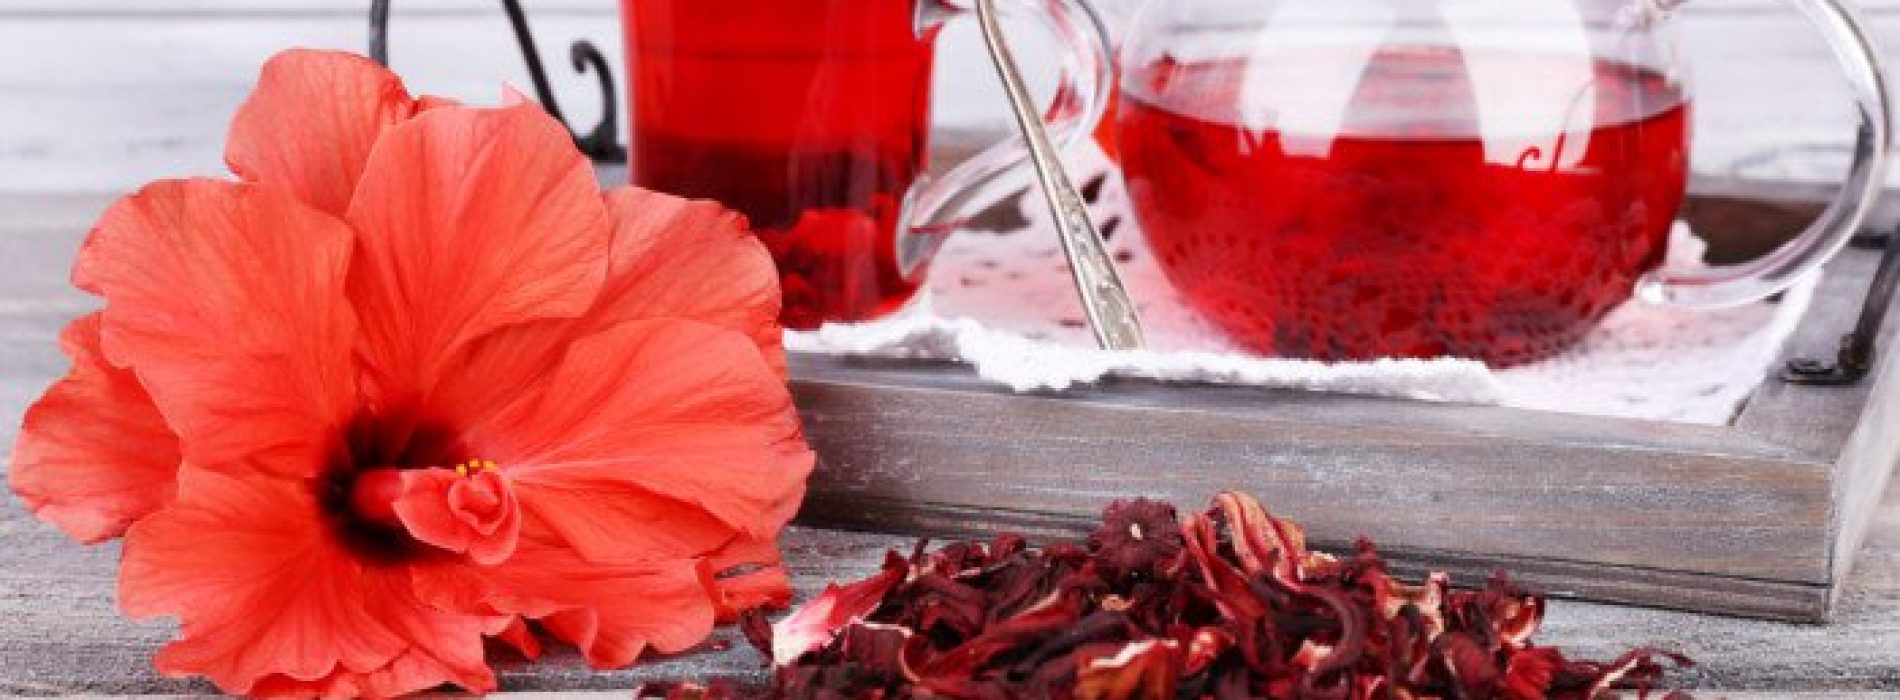 Hibiscus-thee verbetert de doorbloeding, vermindert het risico op hart- en vaatziekten